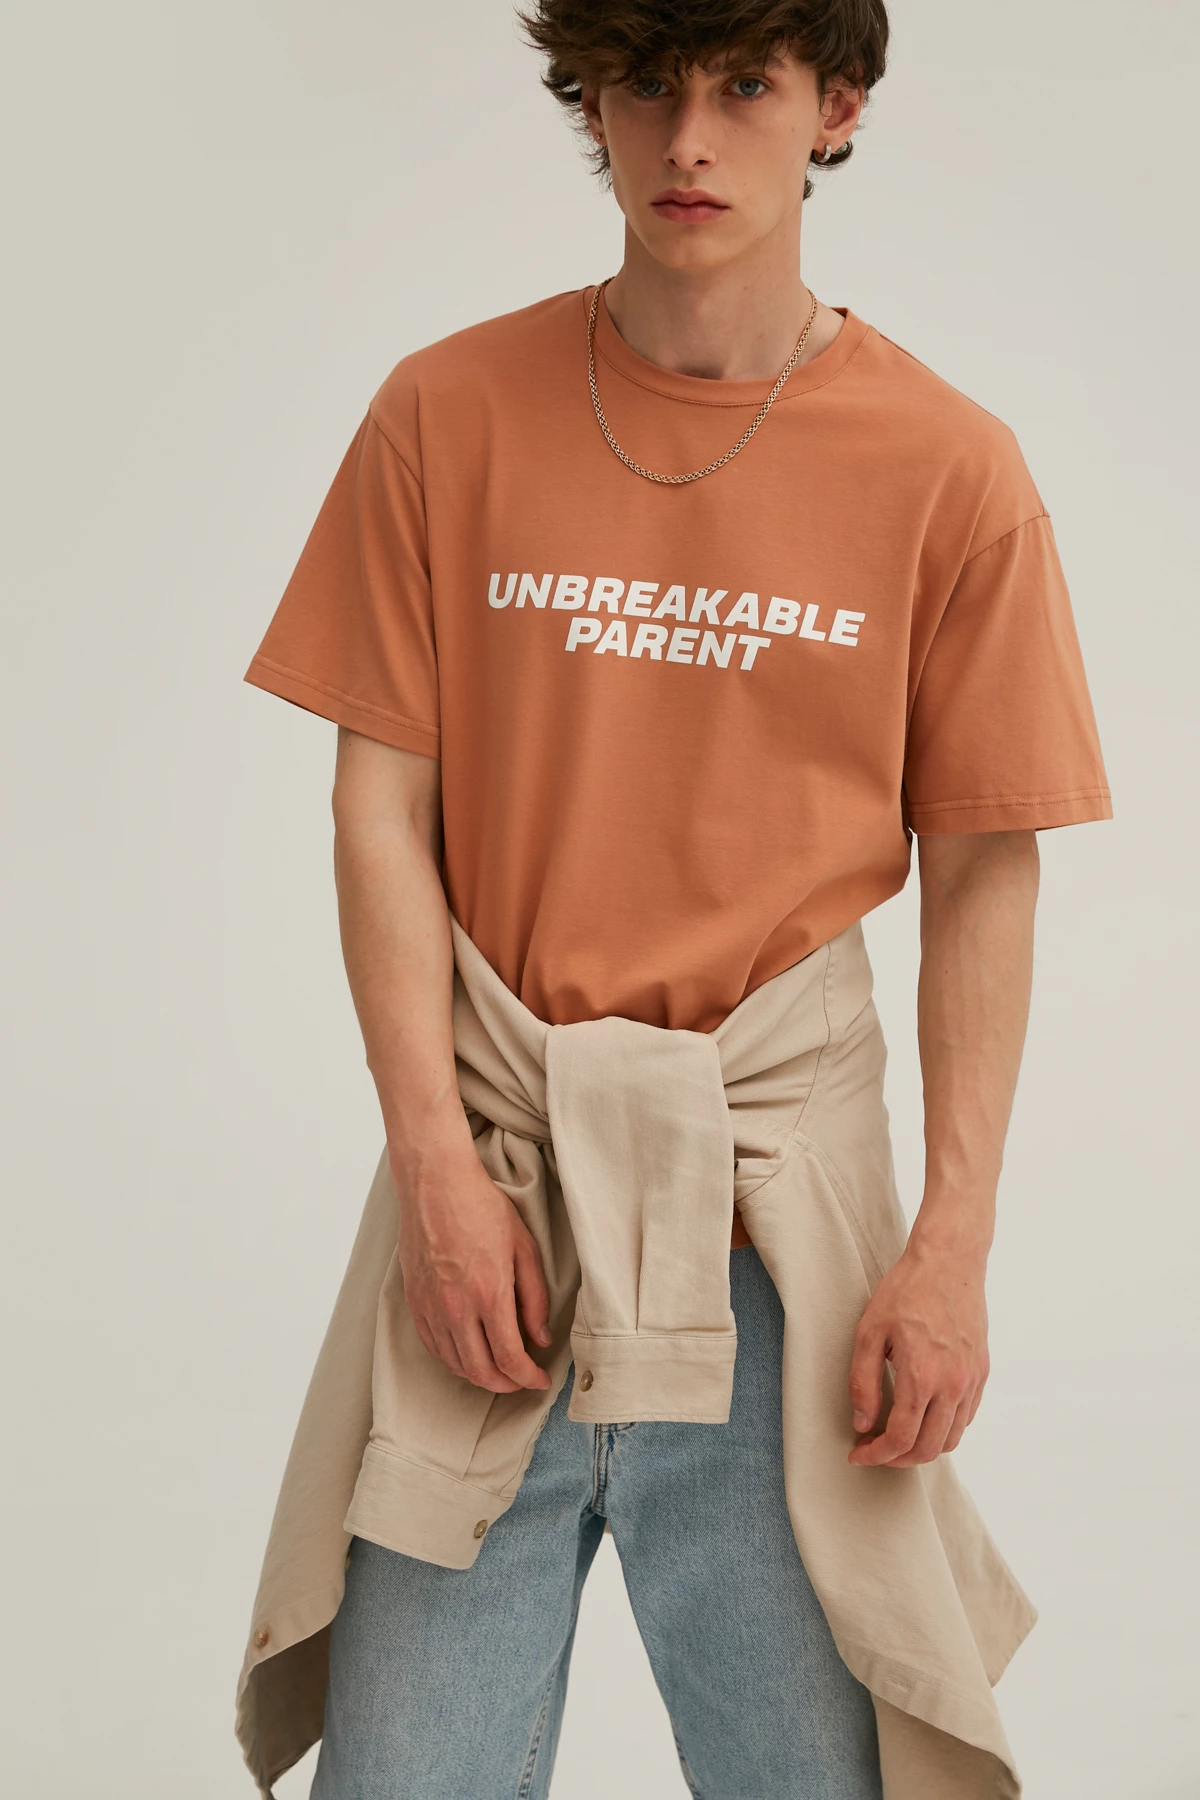 Карамельна унісекс-футболка з написом "Unbreakable parent" з трикотажу, фото 6